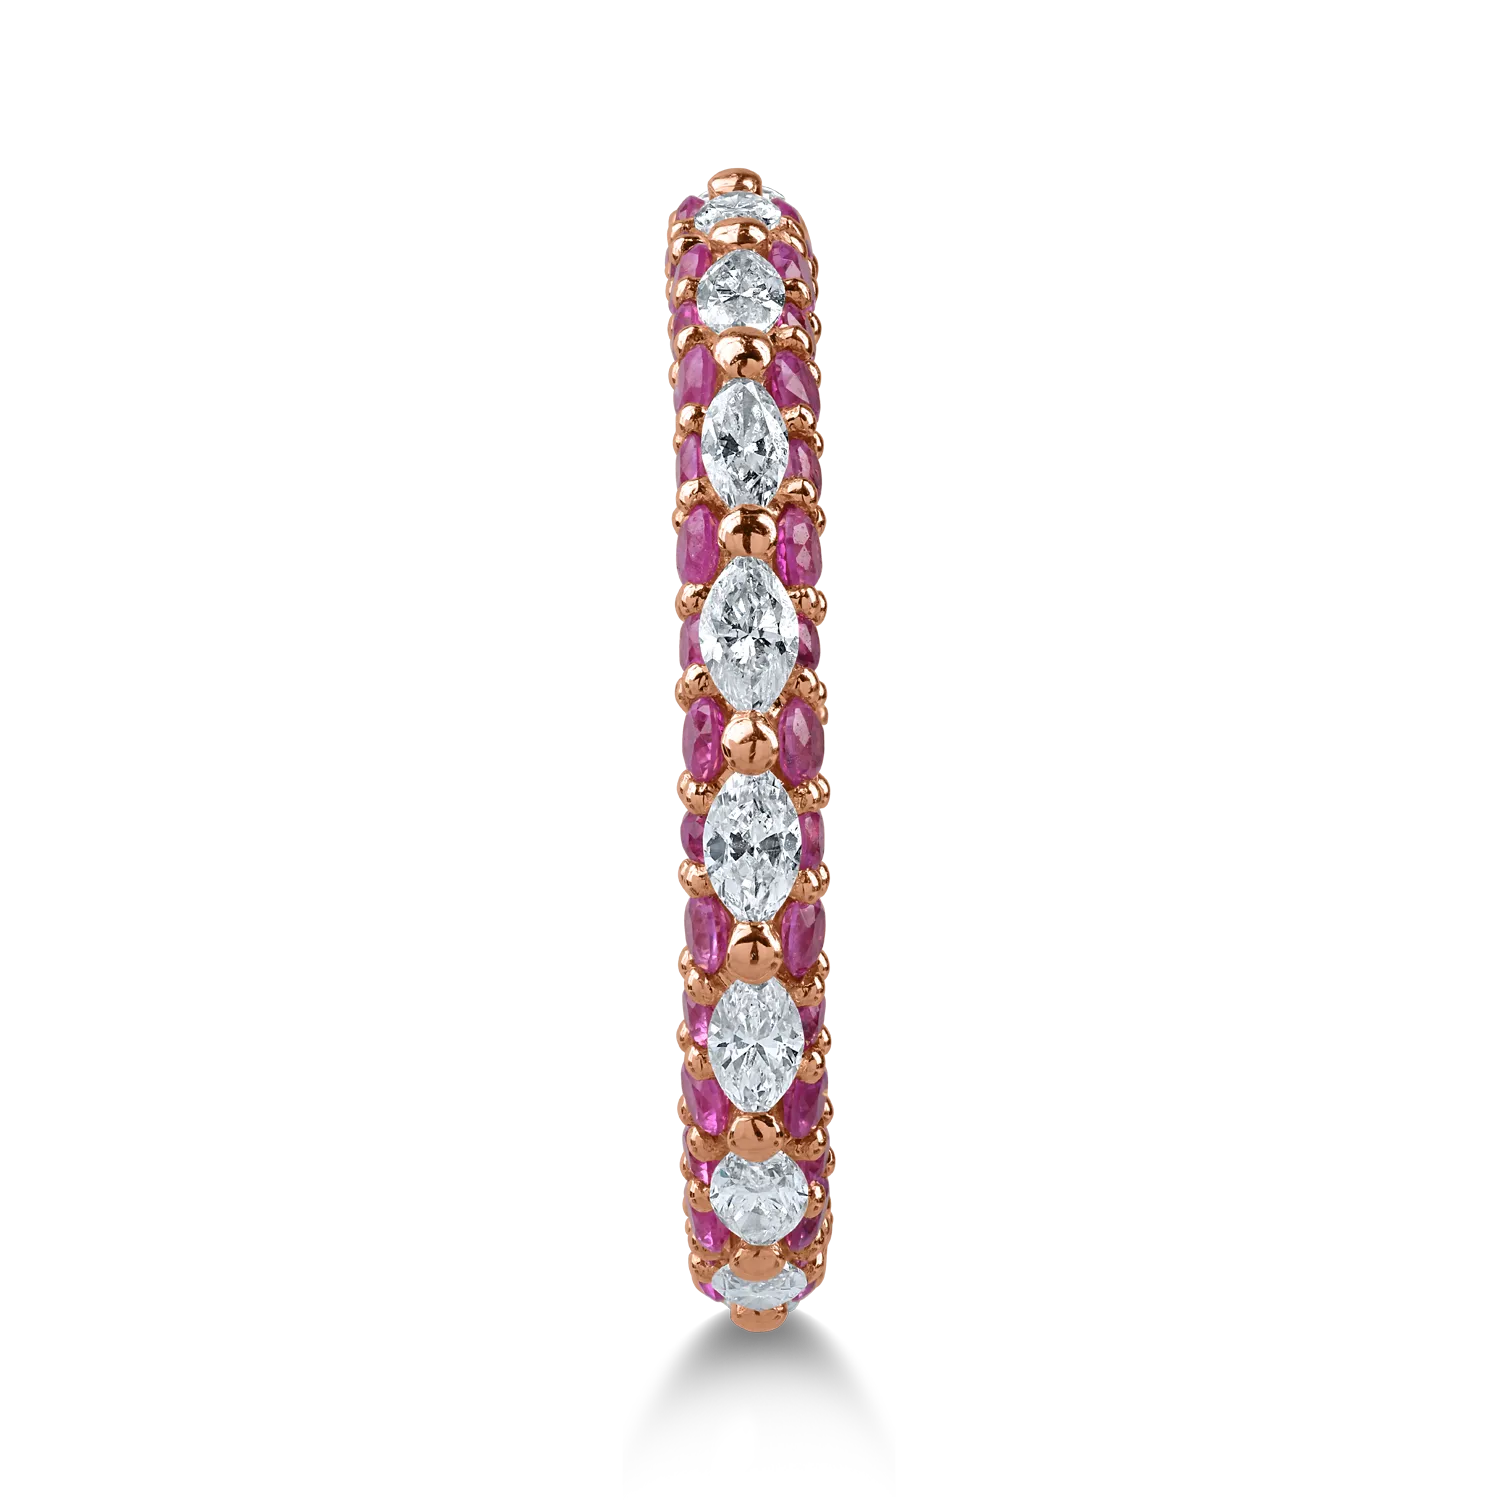 Örökkévalóság gyűrű rózsaszín aranyból 0.6ct gyémánttal és 1.3ct rózsaszín zafírral